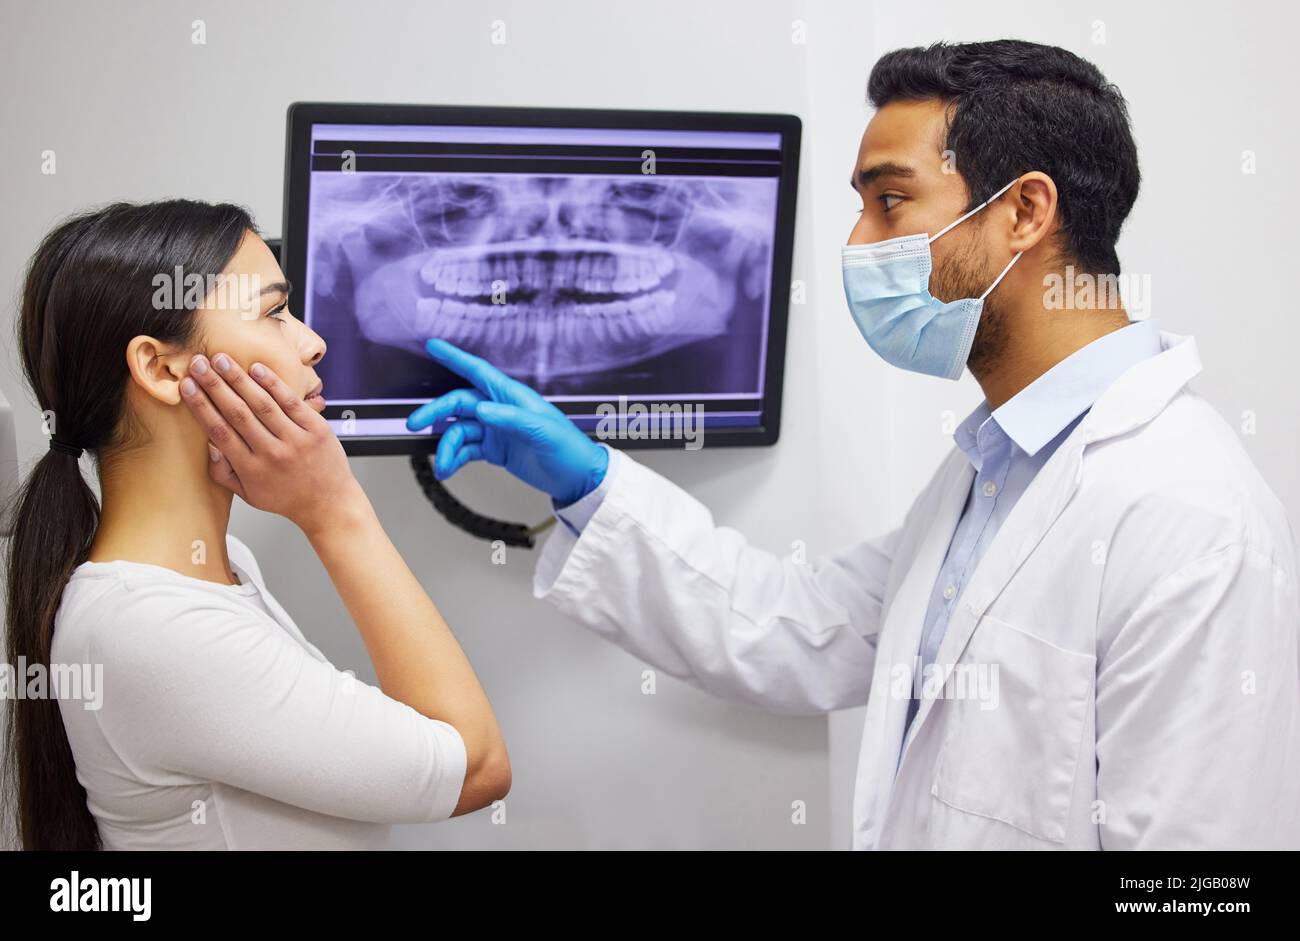 Il vostro dente di saggezza realmente sta sviluppandosi nella vostra mascella ossea. Un dentista che discute i risultati di un paziente i denti x ray. Foto Stock